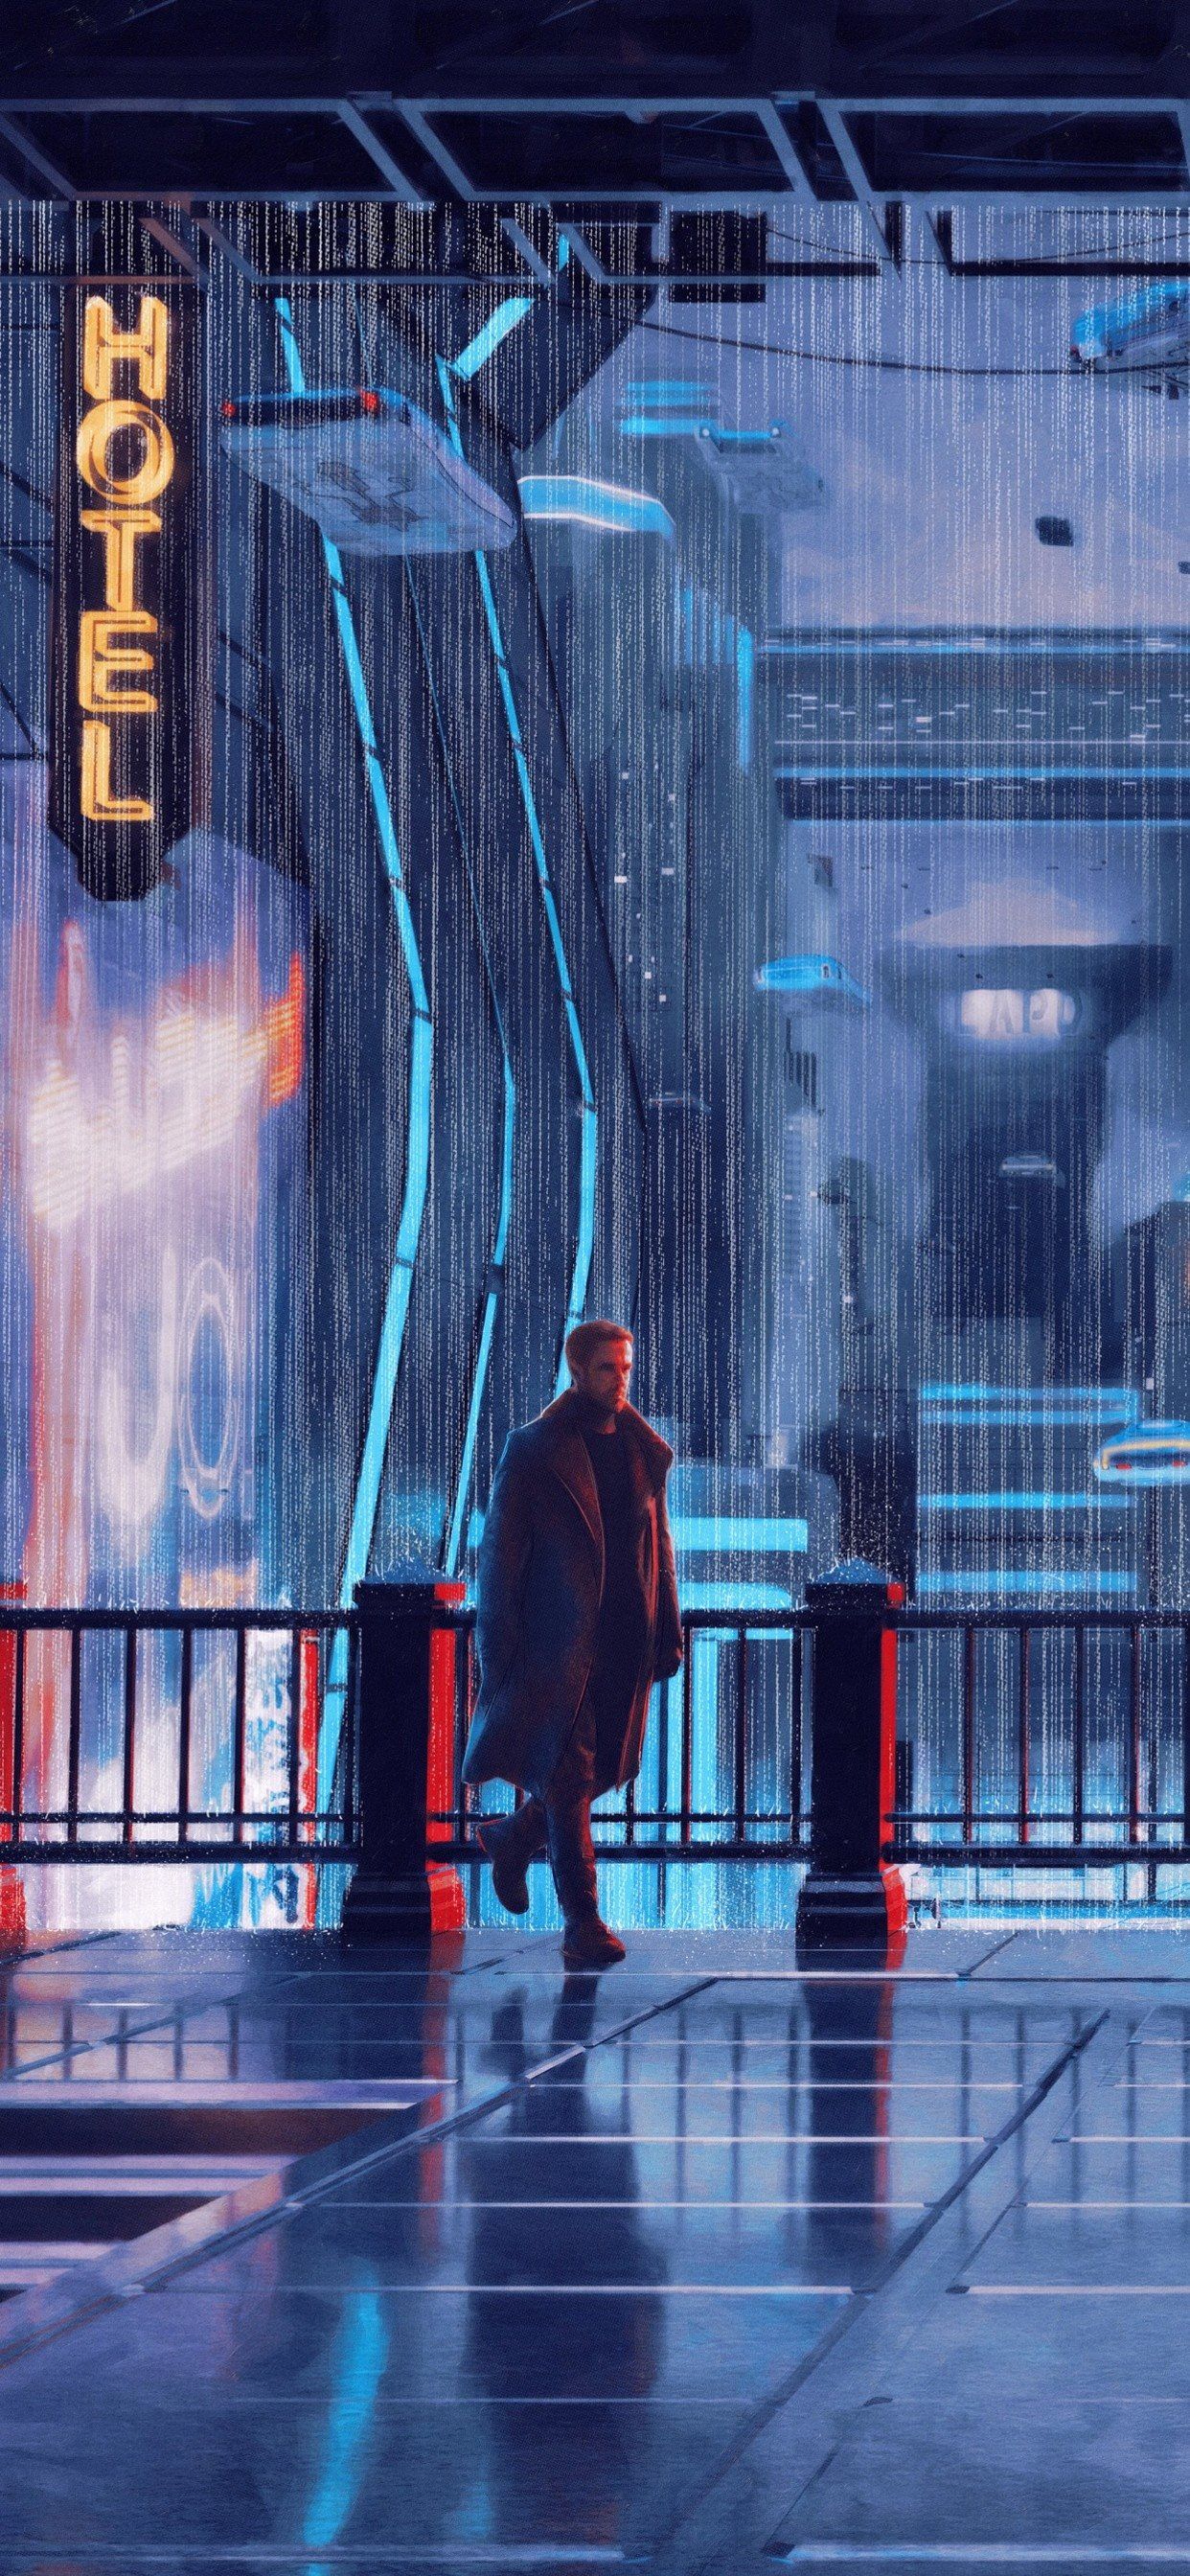 Blade Runner 2049 iPhone Wallpaper Free HD Wallpaper